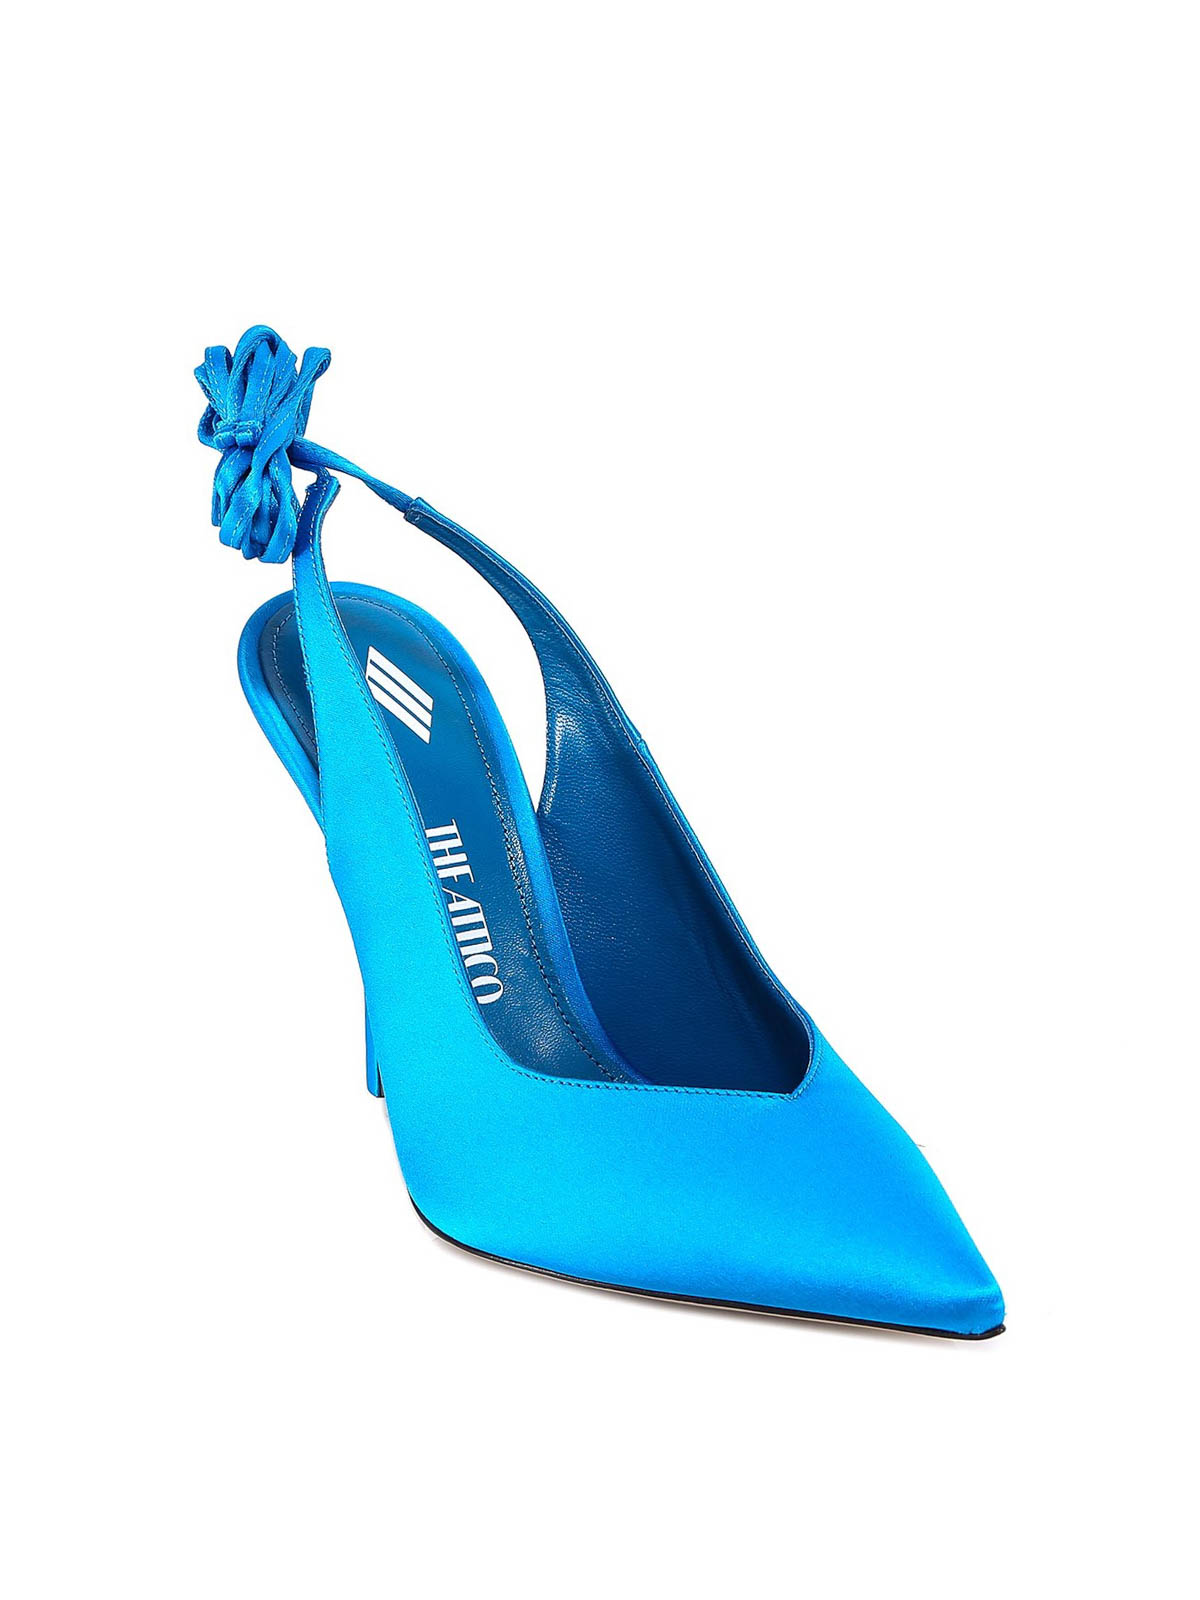 Shop Attico Zapatos De Salón - Venus 115 In Blue